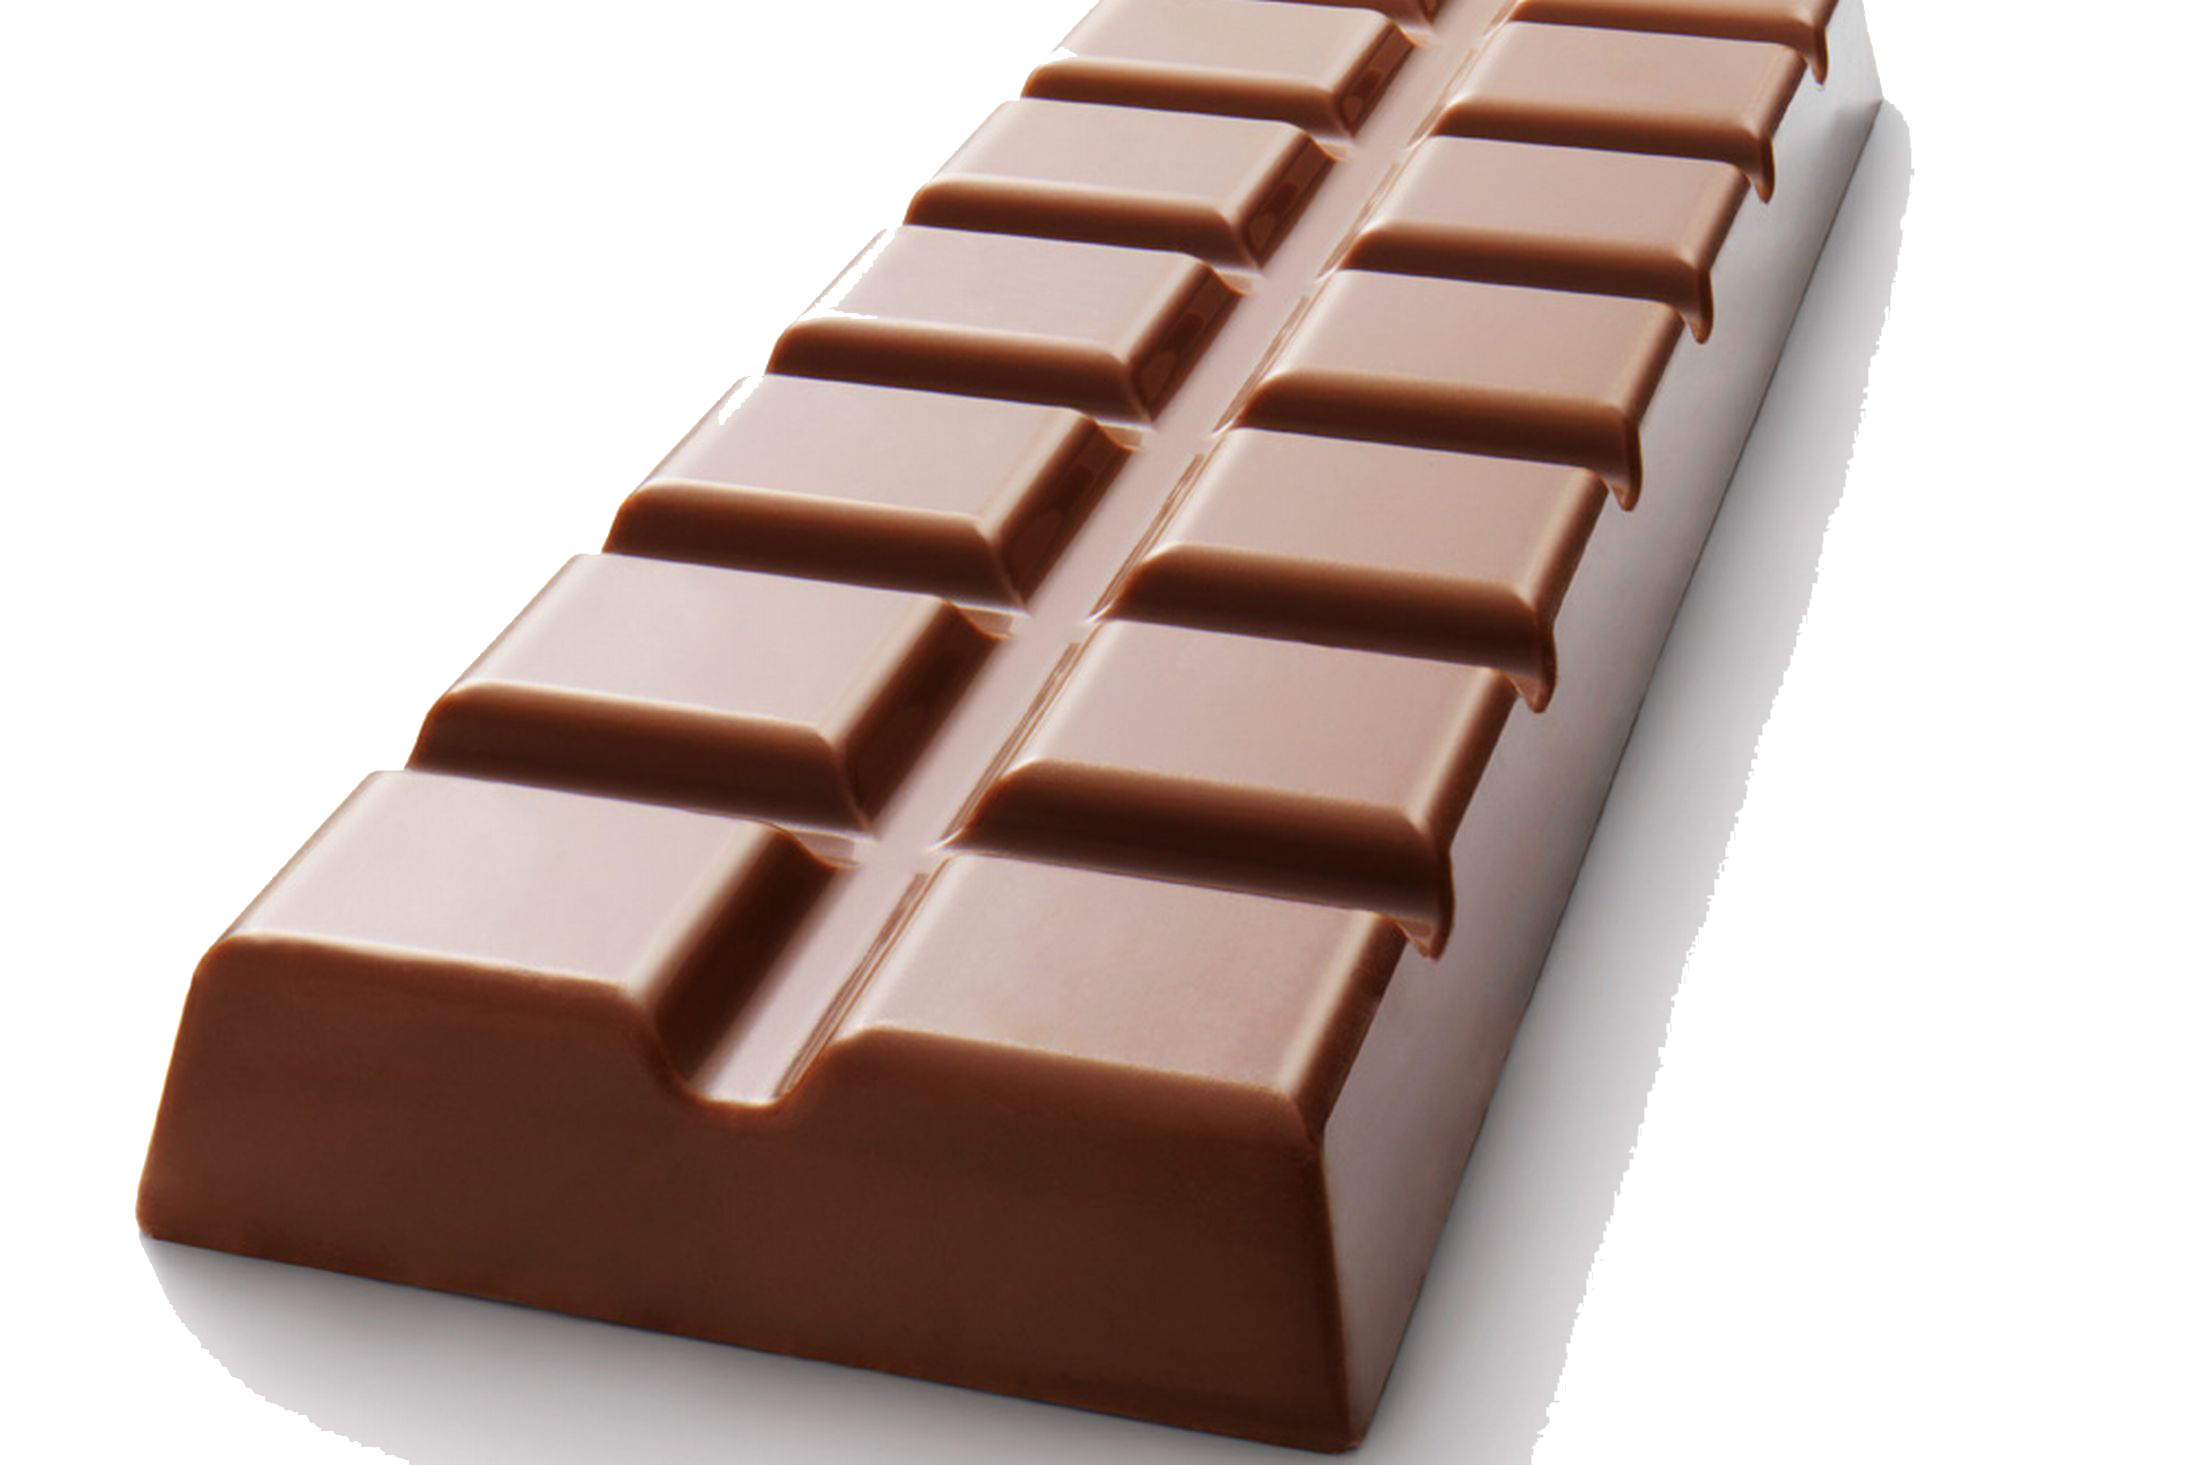 Шоколад шоколадку. Плиточный шоколад. Молочный шоколад. Шоколадная плитка. Плитка шоколада на прозрачном фоне.